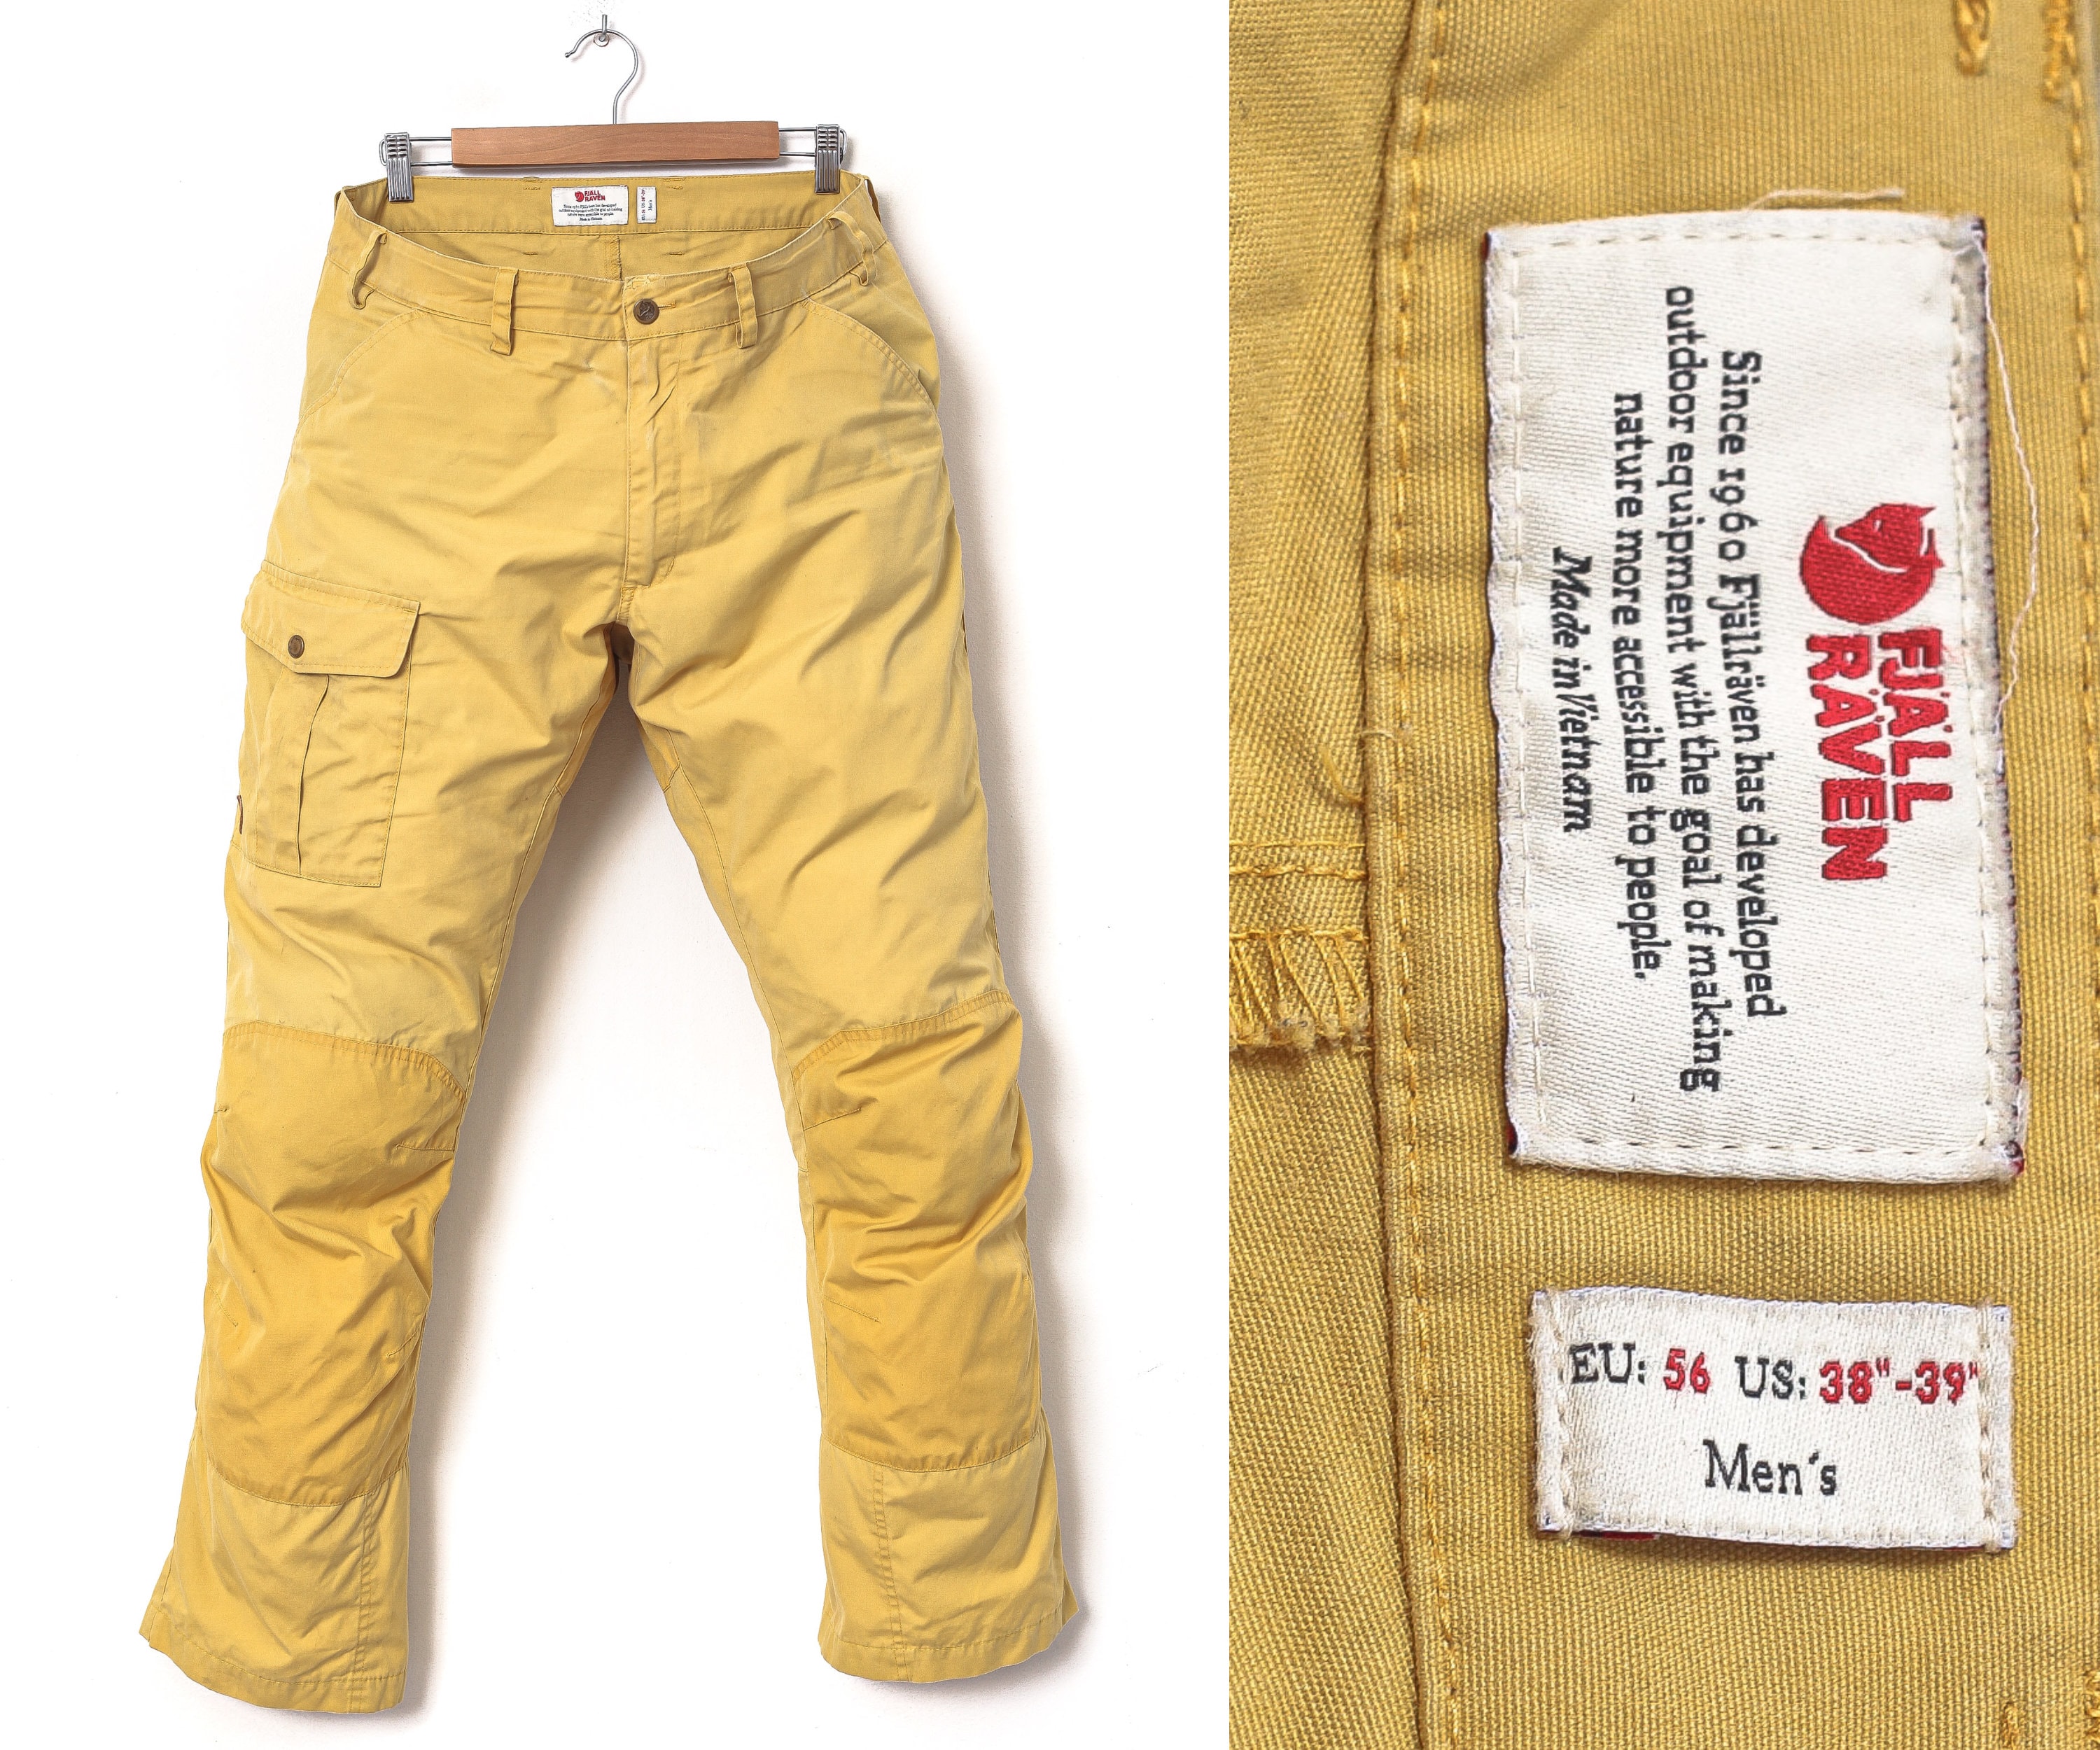 tijdschrift Oude tijden kleding stof Mens FJALLRAVEN Nils Trousers G-1000 Pants Hiking Trekking - Etsy